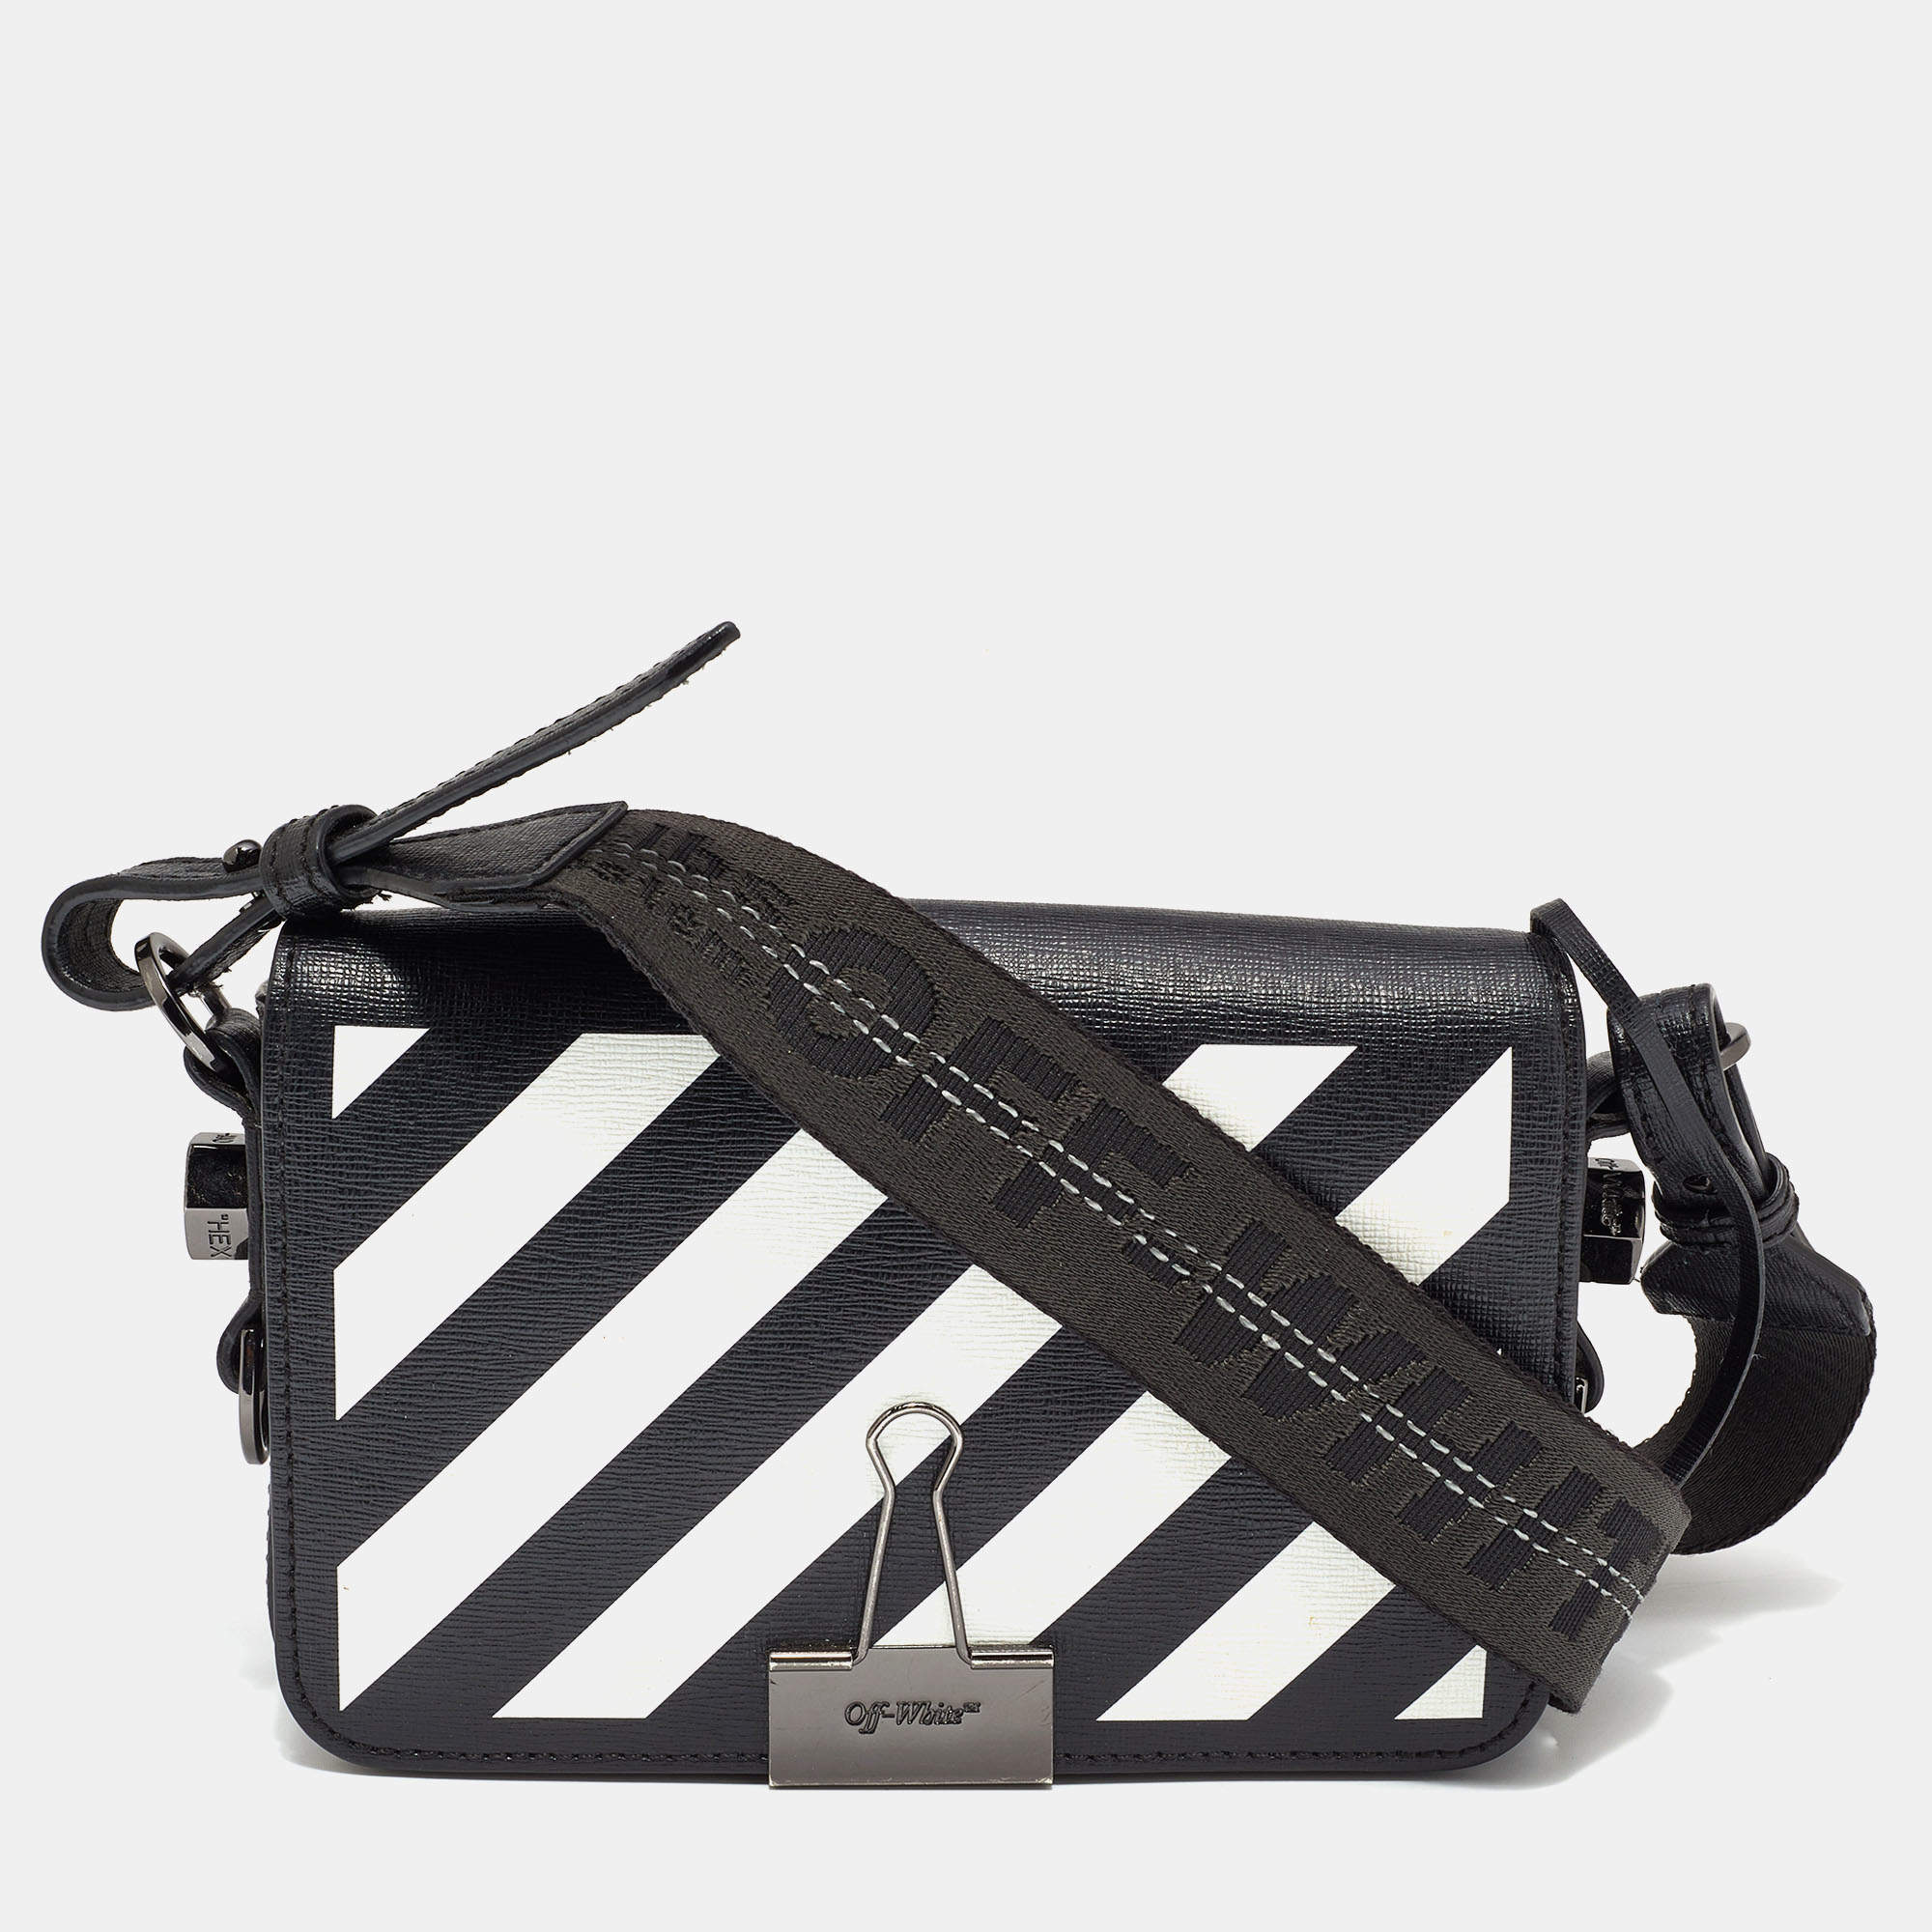 Off-white Binder Clip Leather Shoulder Bag In Black White